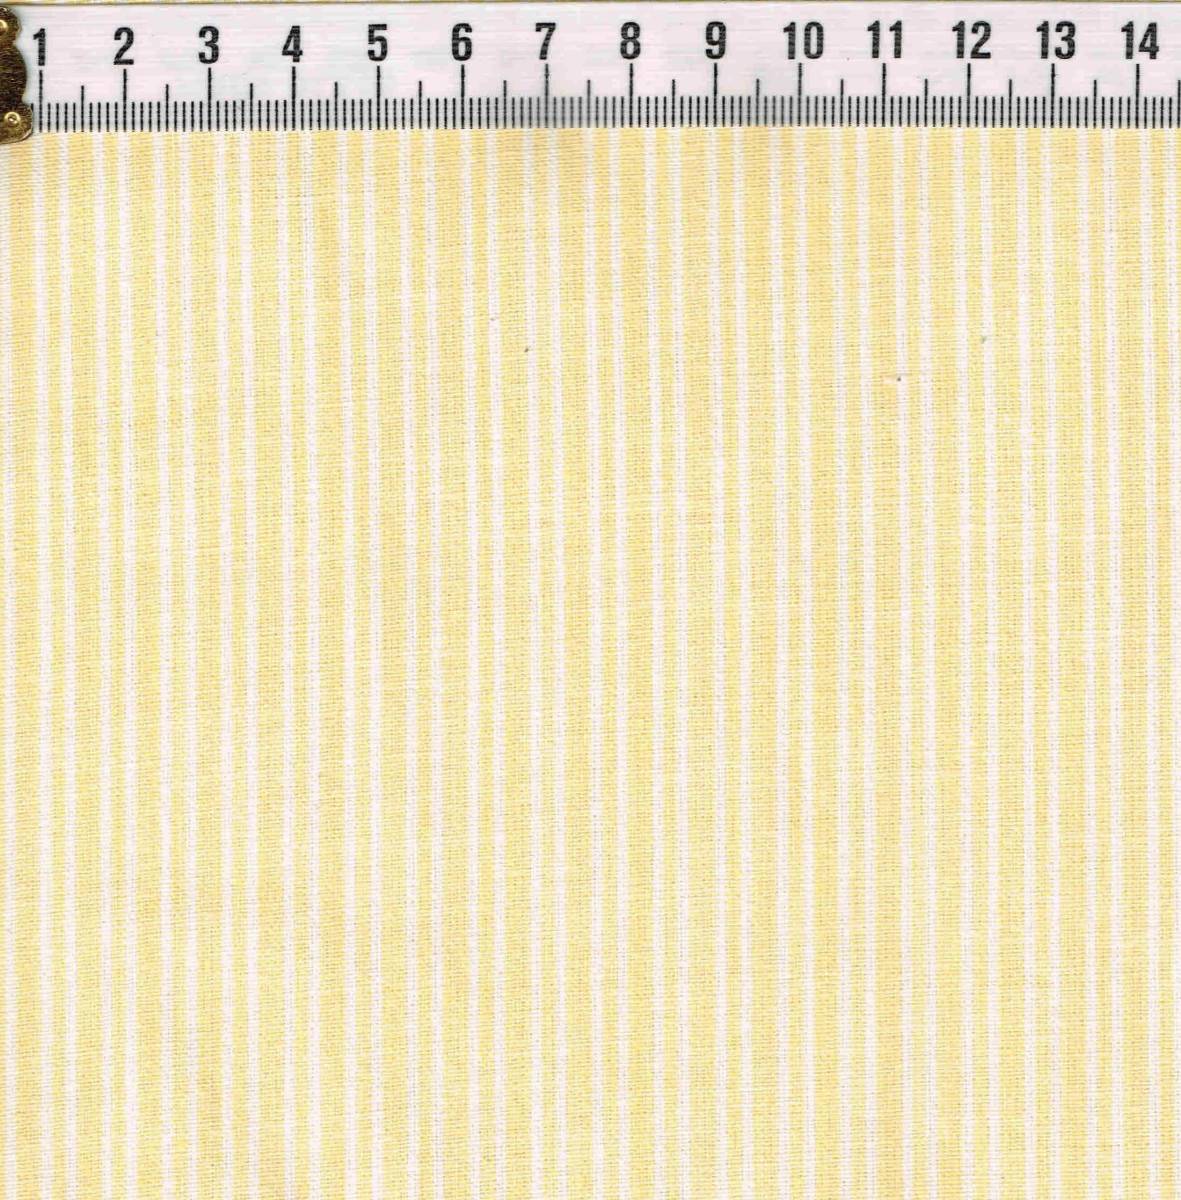 *USA хлопок 30\'s переиздание рисунок полоса желтый белый размер примерно 50cm×110cm u-0205